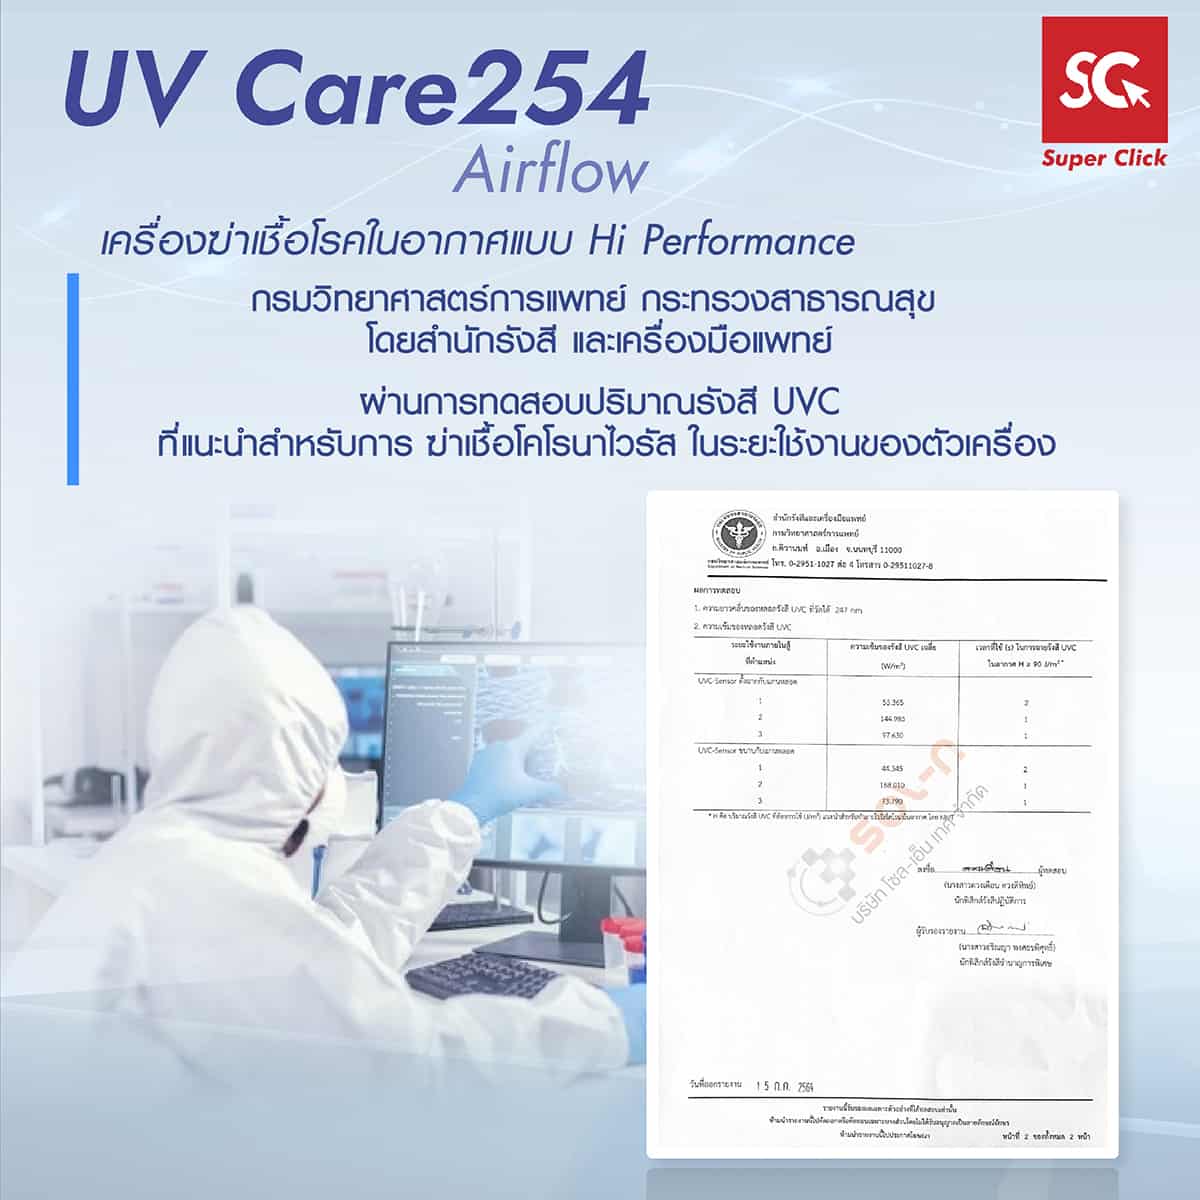 ผลการทดสอบในห้องปฏิบัติการ UV Care254 Airflow เครื่องฆ่าเชื้อโรคในอากาศแบบ Hi Performance ที่ กรมวิทยาศาสตร์การแพทย์ กระทรวงสาธารณสุขโดยสำนักรังสีและเครื่องมือแพทย์ ผ่านการทดสอบปริมาณรังสี UVC ที่แนะนำสำหรับการ ฆ่าเชื้อโคโรนาไวรัส ในระยะใช้งานของตัวเครื่อง